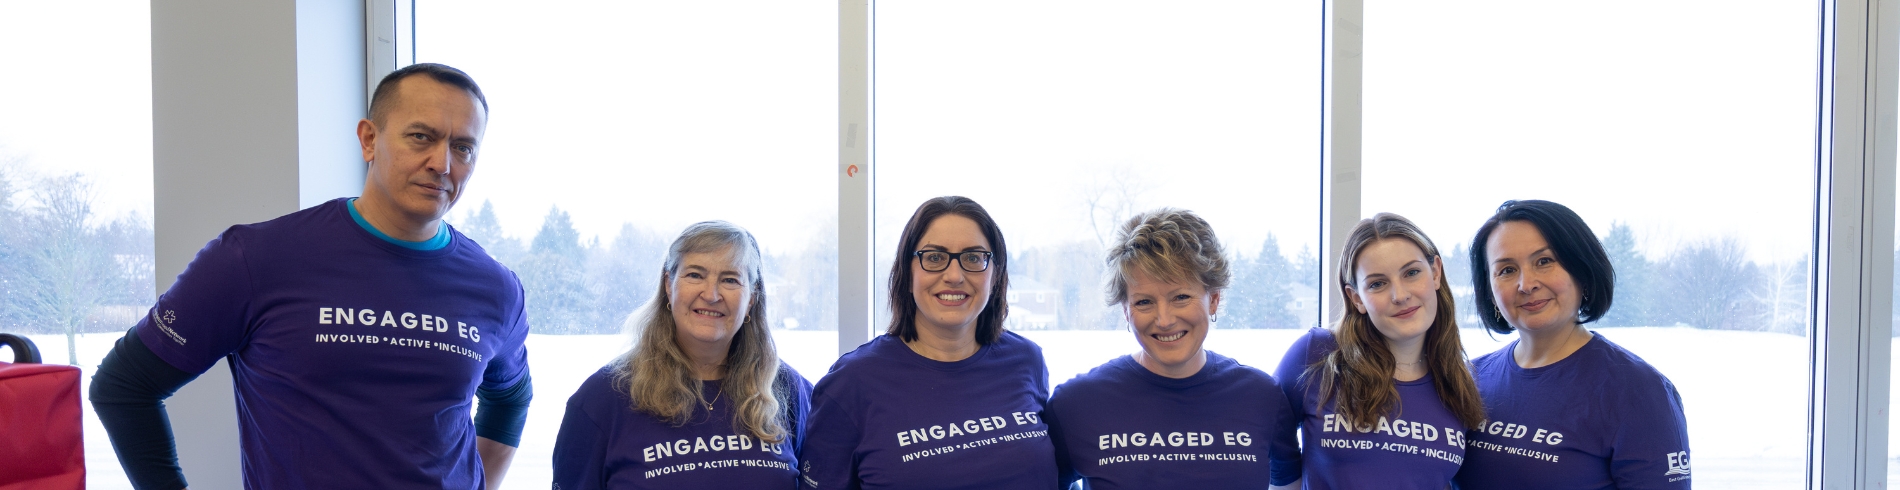 Engaged EG group in purple shirts that says Engaged EG